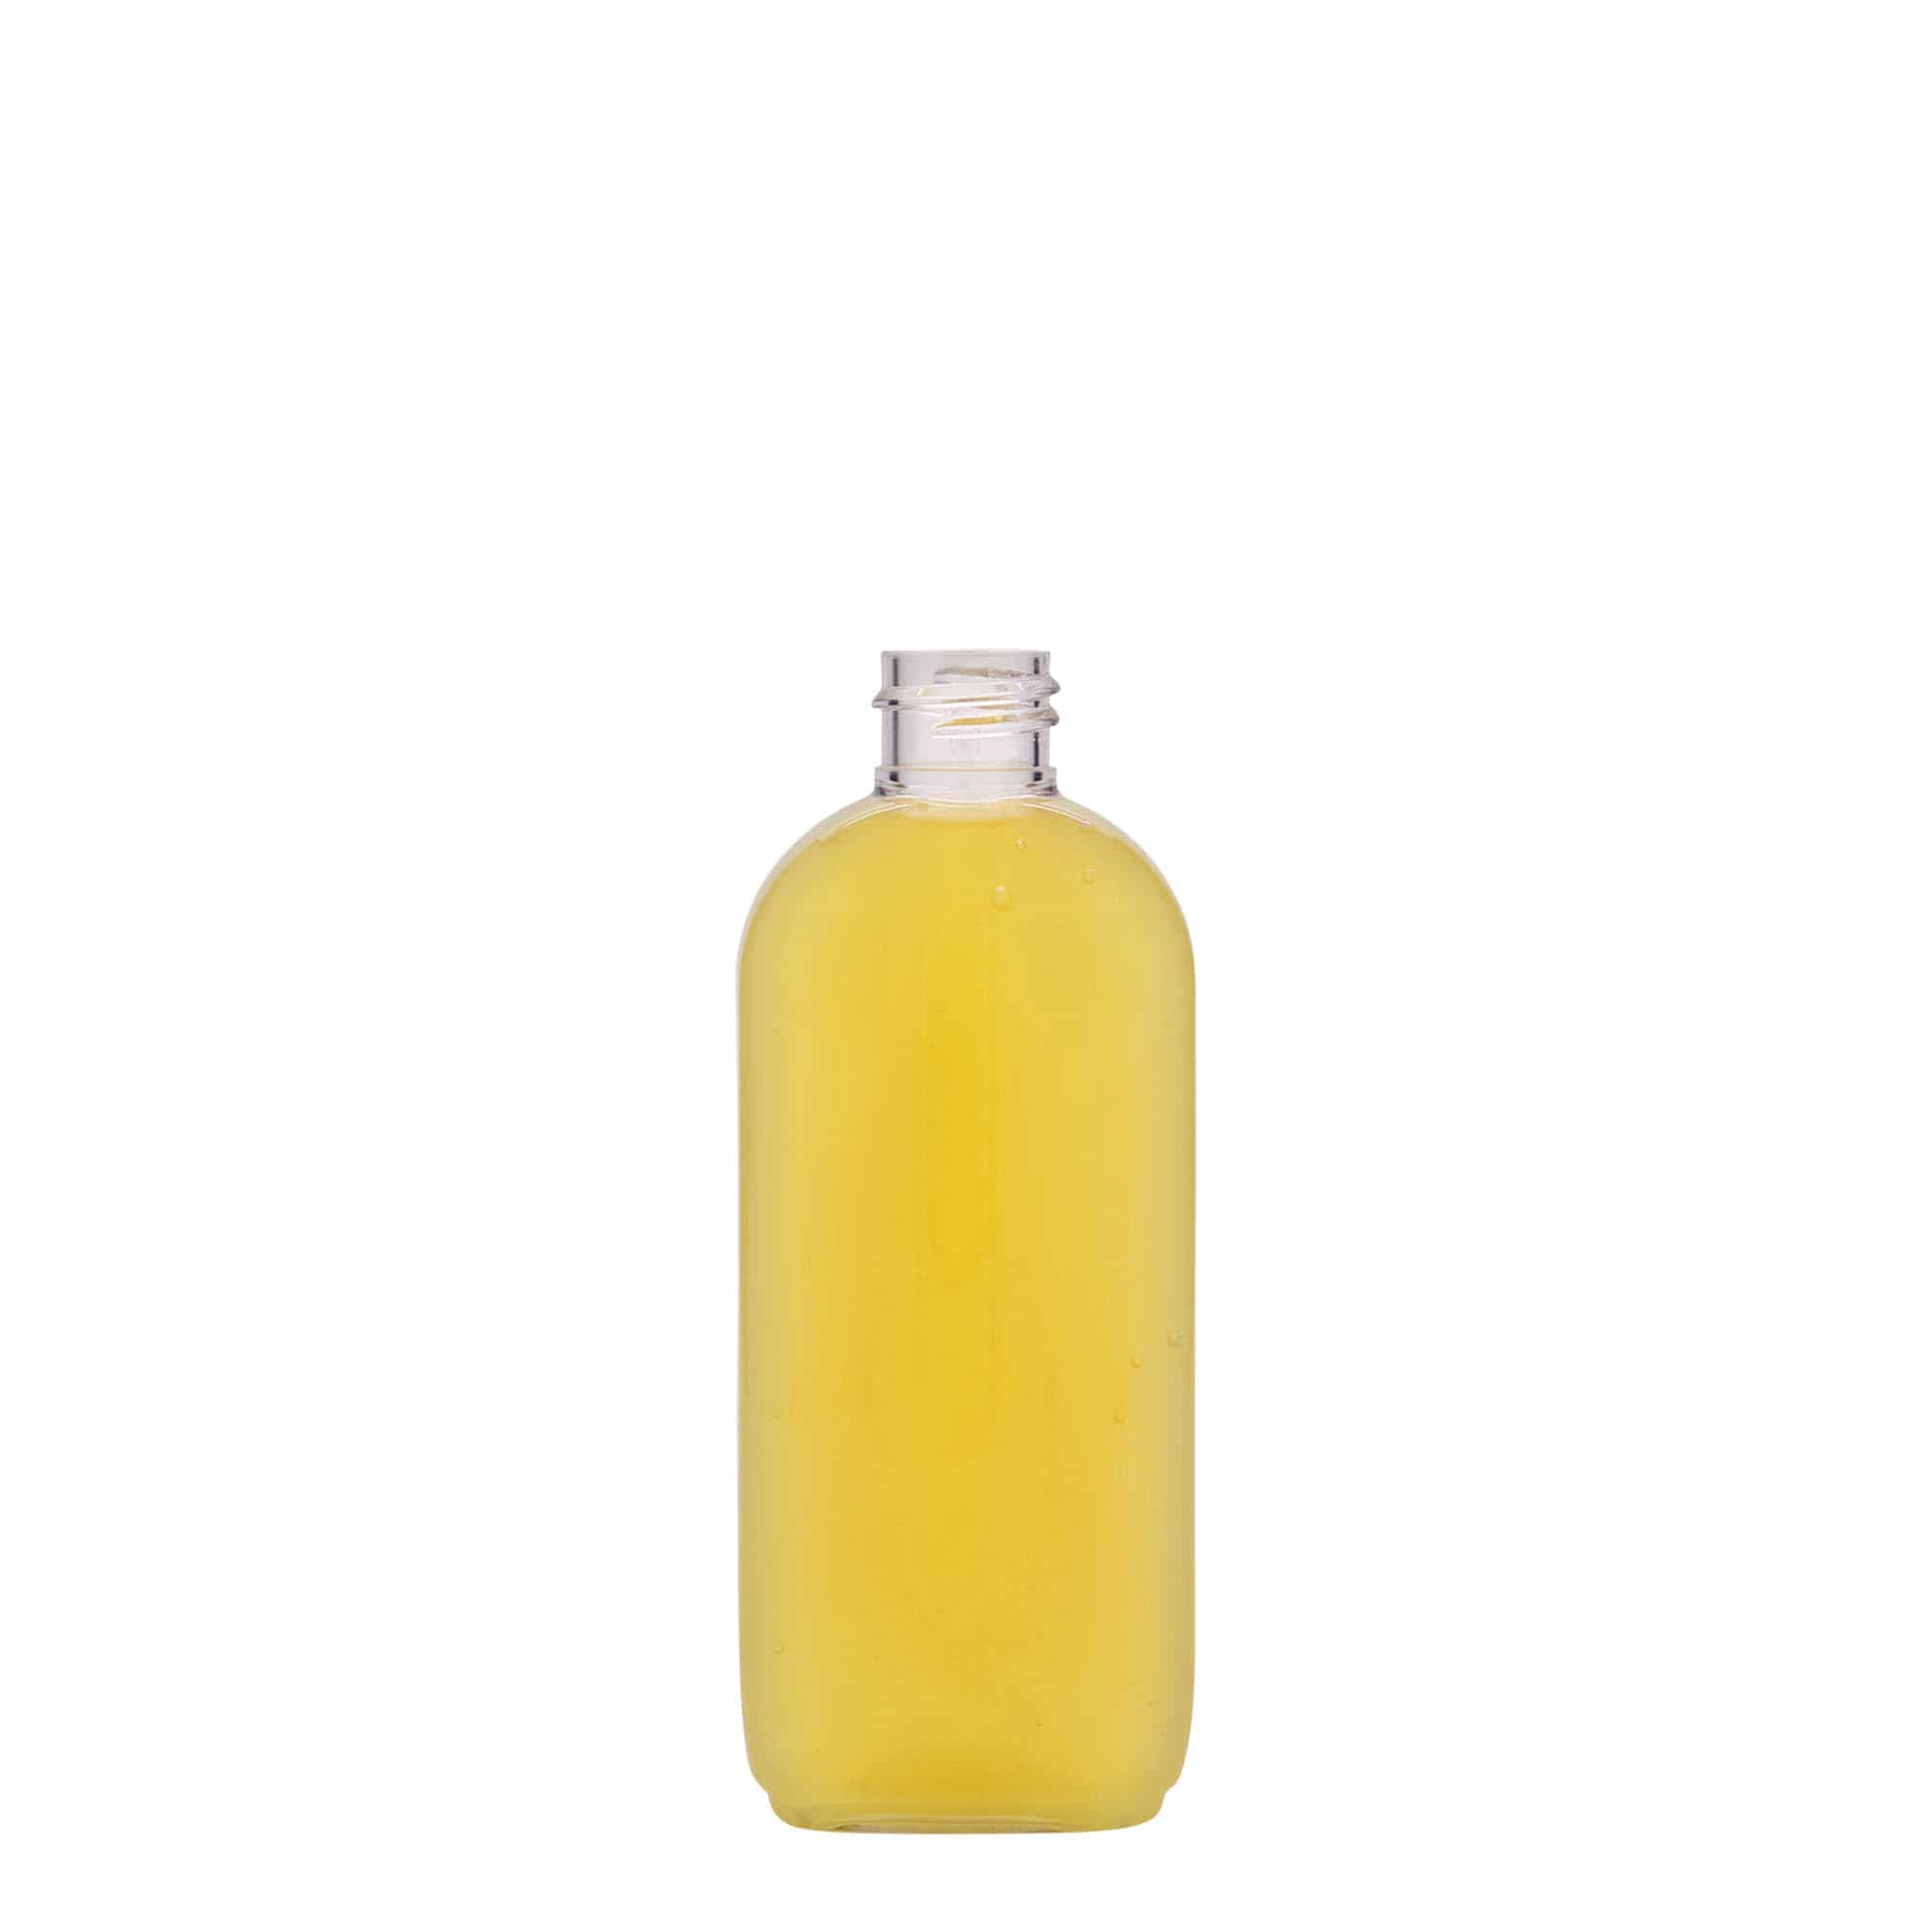 Botella de PET 'Iris' de 100 ml, ovalada, plástico, boca: GPI 20/410